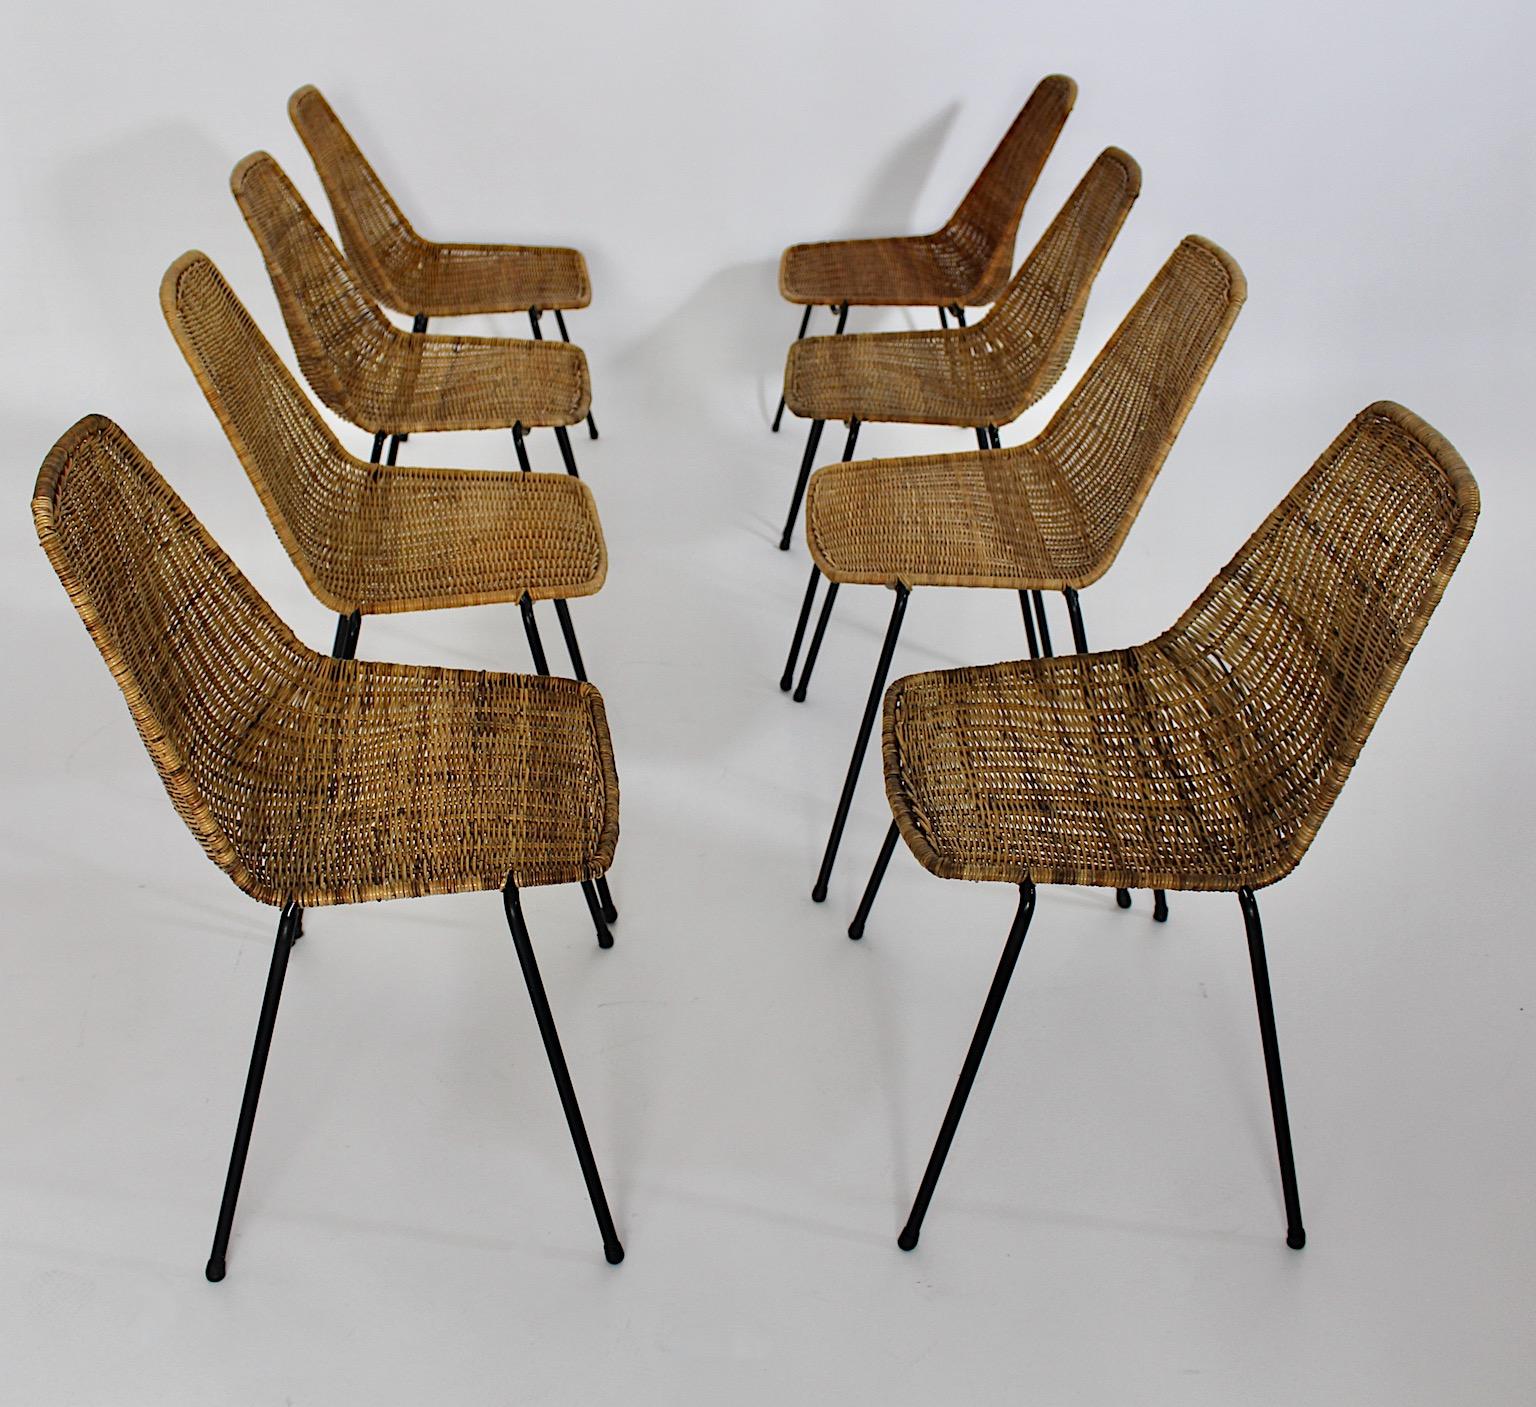 Huit chaises ou fauteuils de salle à manger en rotin et métal vintage et authentique de Gian Franco Legler années 1950.
Un fabuleux, rare et authentique huit ( 8 ) chaises de salle à manger ou fauteuils avec une coque d'assise très confortable en